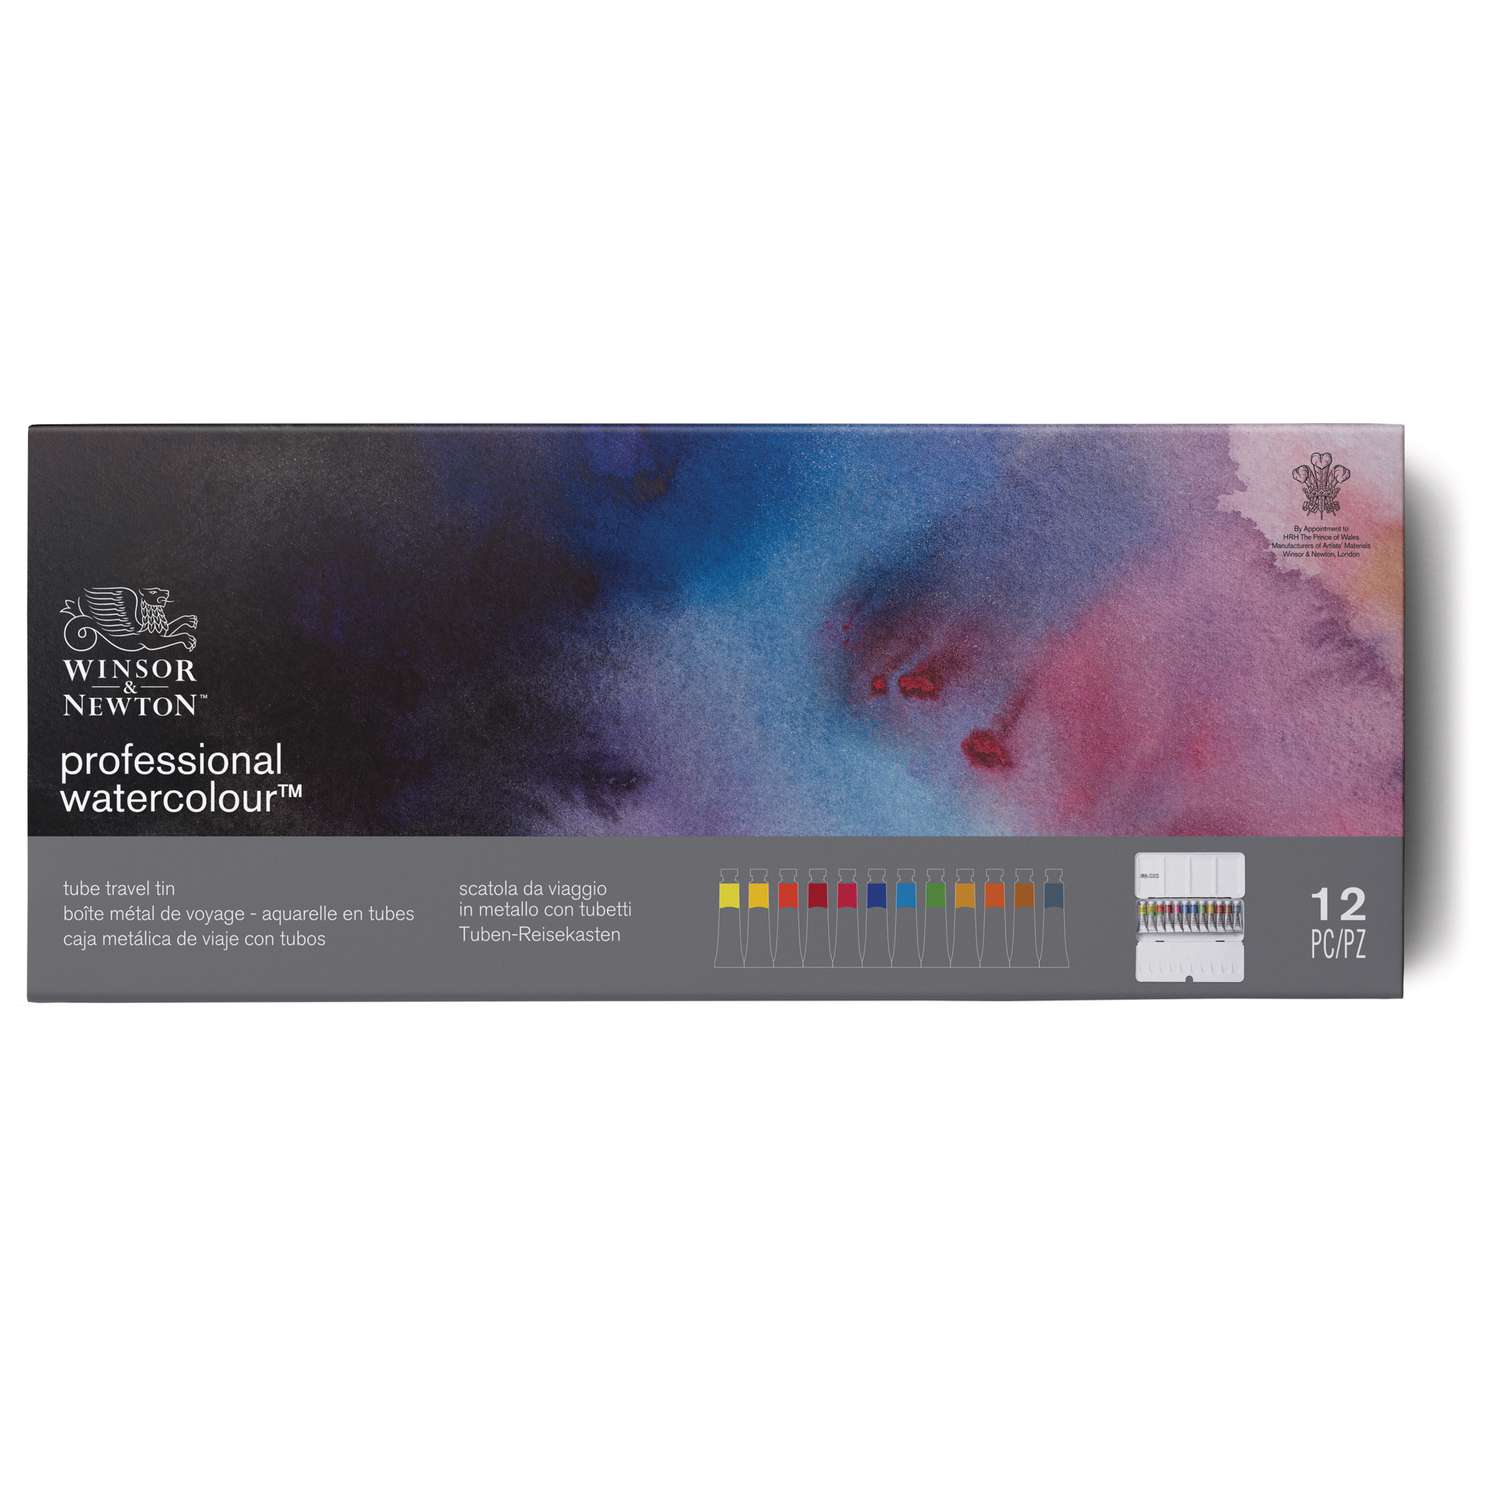 Coffret de peinture aquarelle Professional Water Colour de Winsor & Newton  (en métal)